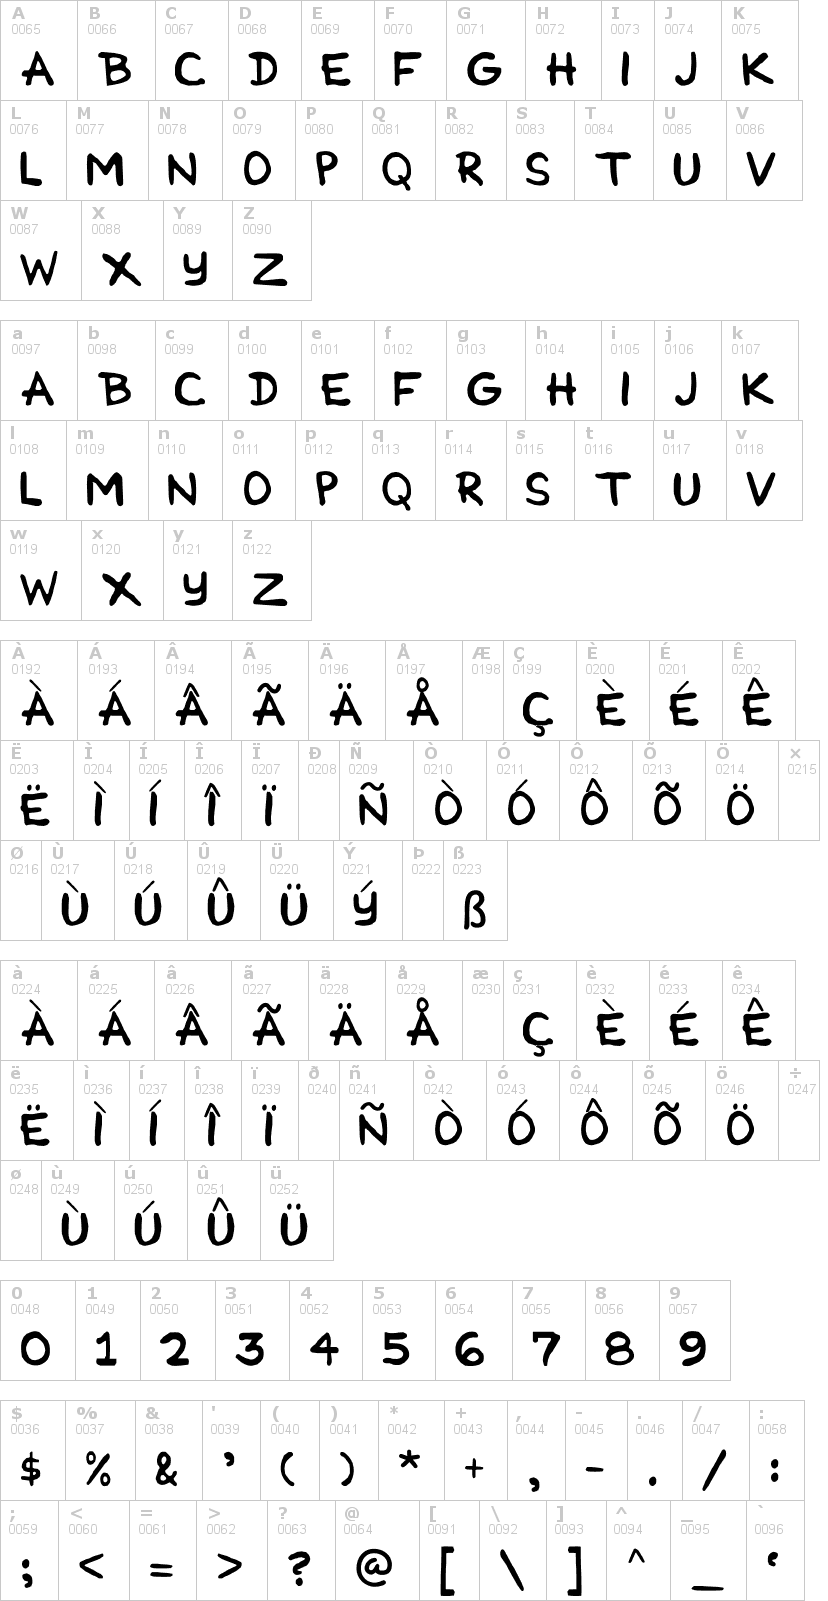 Lettere dell'alfabeto del font cartoonist-simple con le quali è possibile realizzare adesivi prespaziati